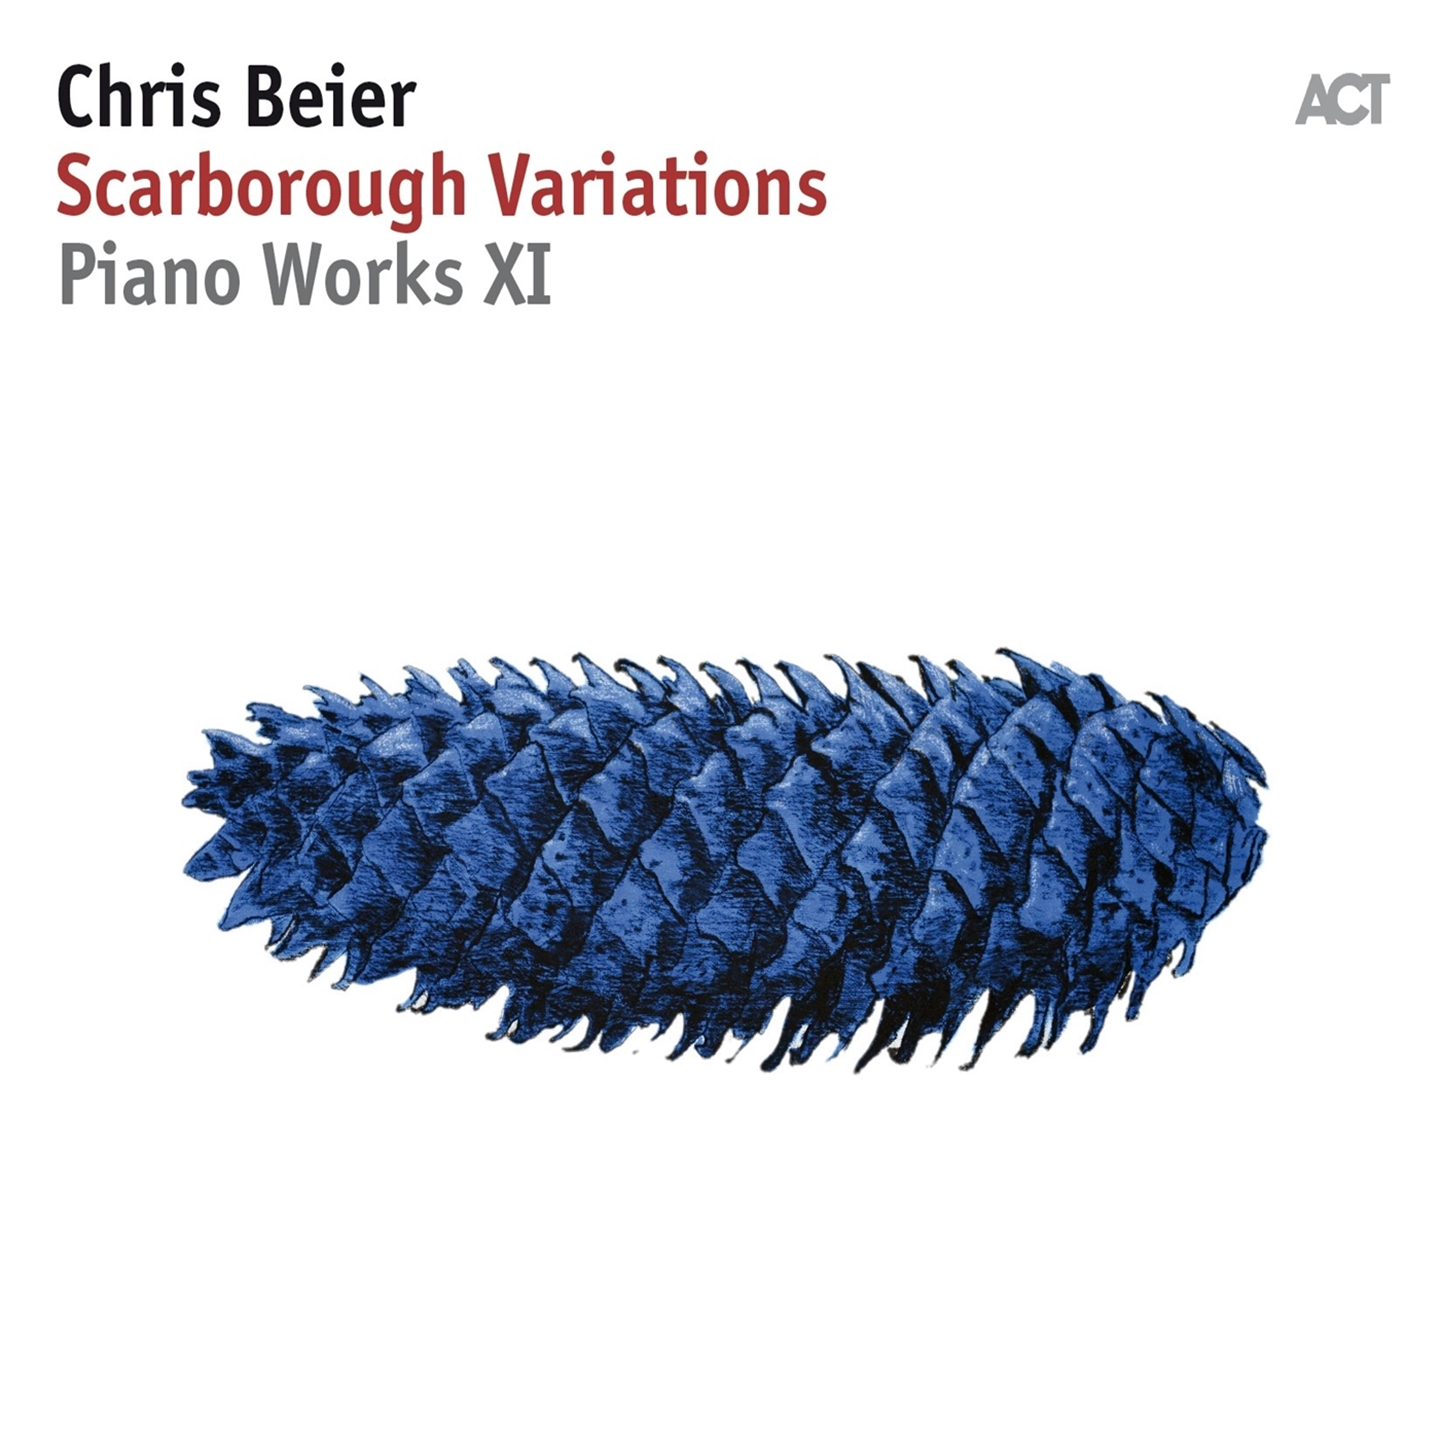 Chris Beier - Scarborough Variations - Photo 1 sur 1